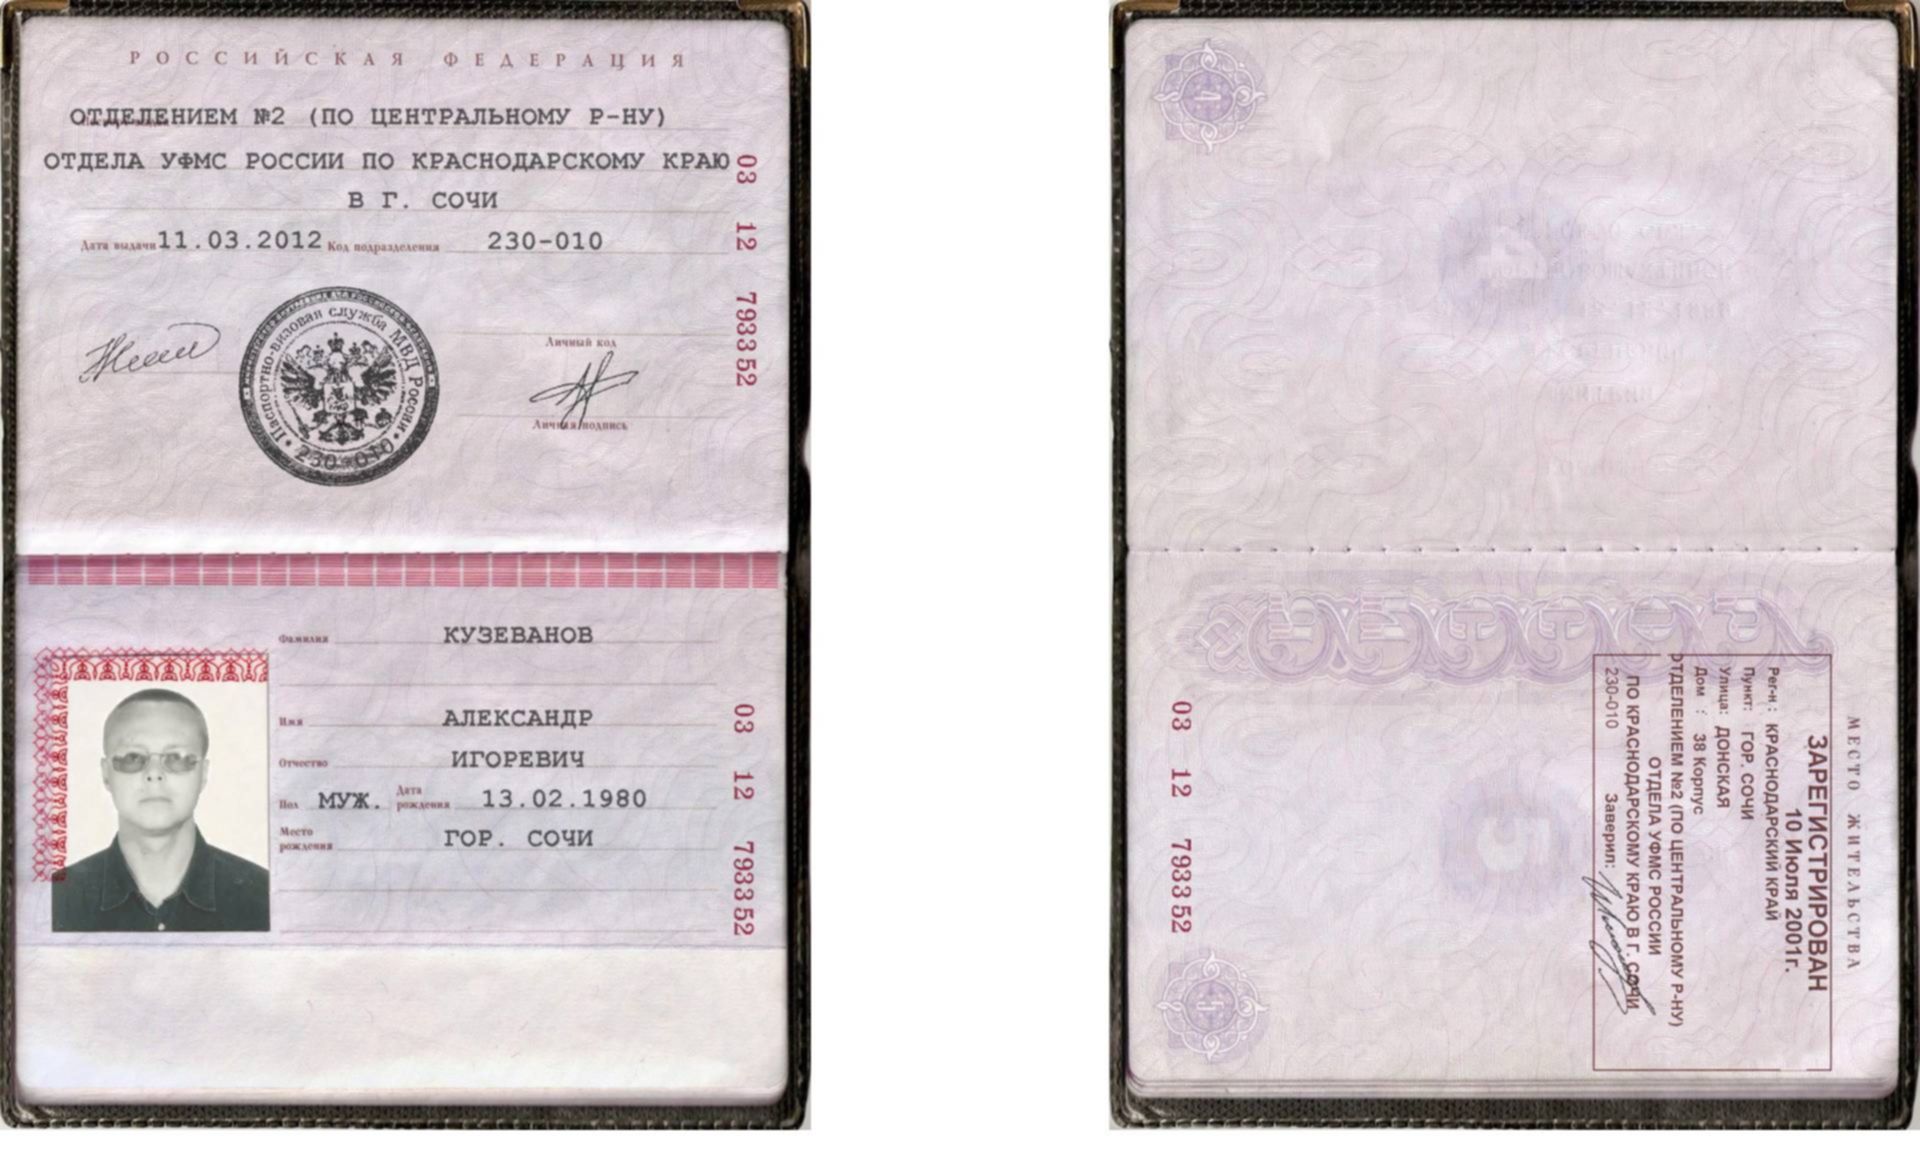 Банк паспортов рф. Скрины паспортов с пропиской.